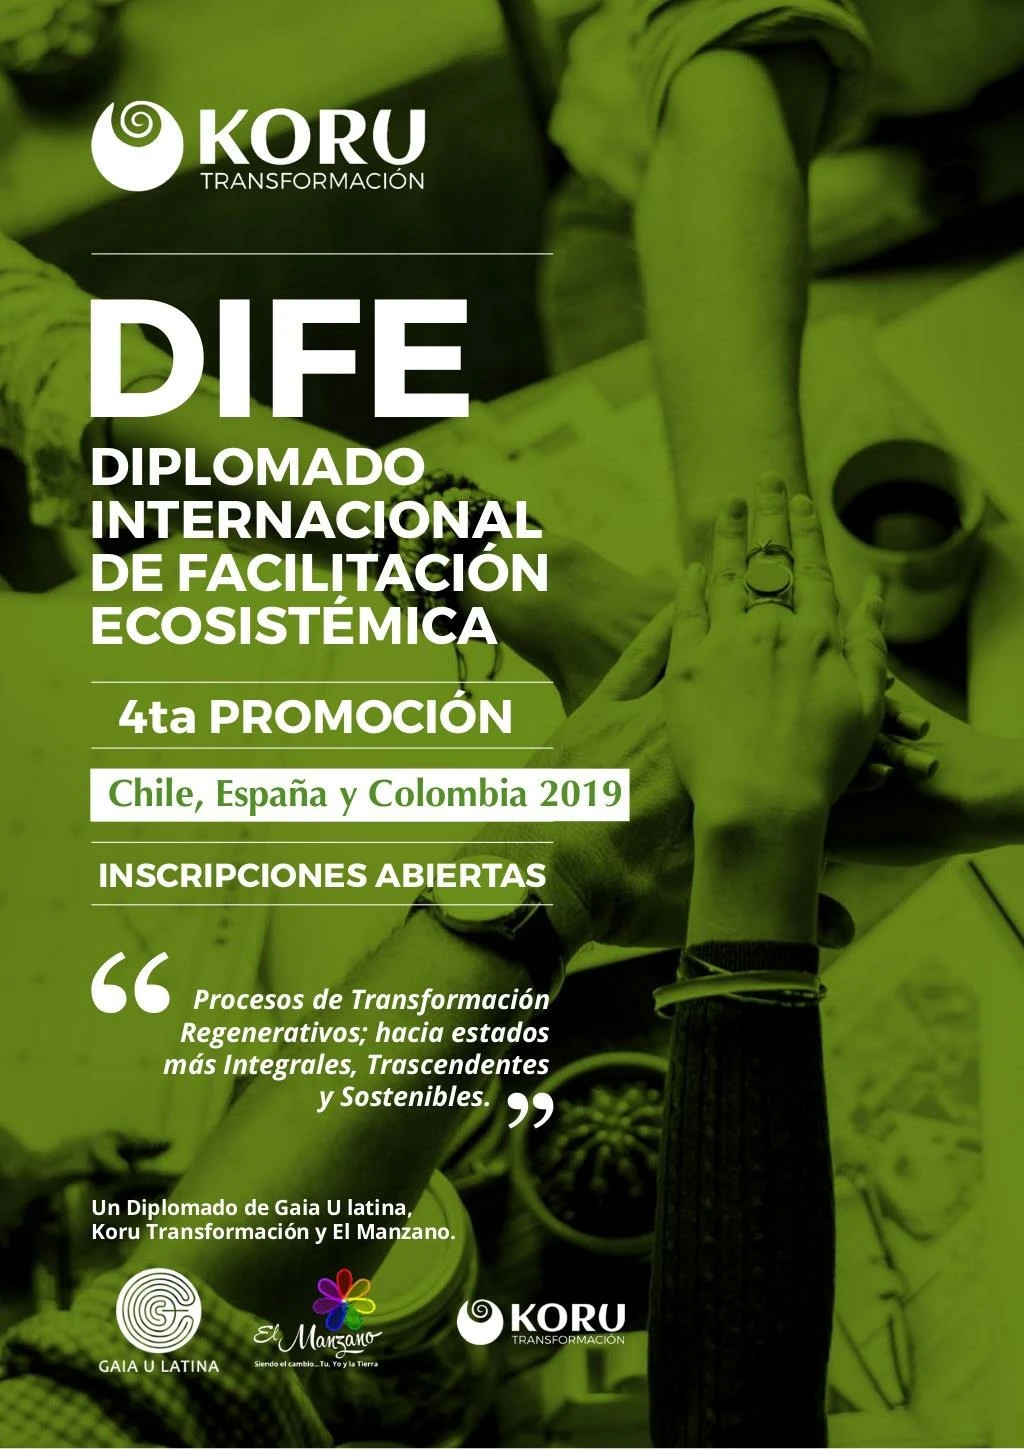 dife 2019 diplomado internacional de facilitaci n ecosist mica chile espa a y colombia